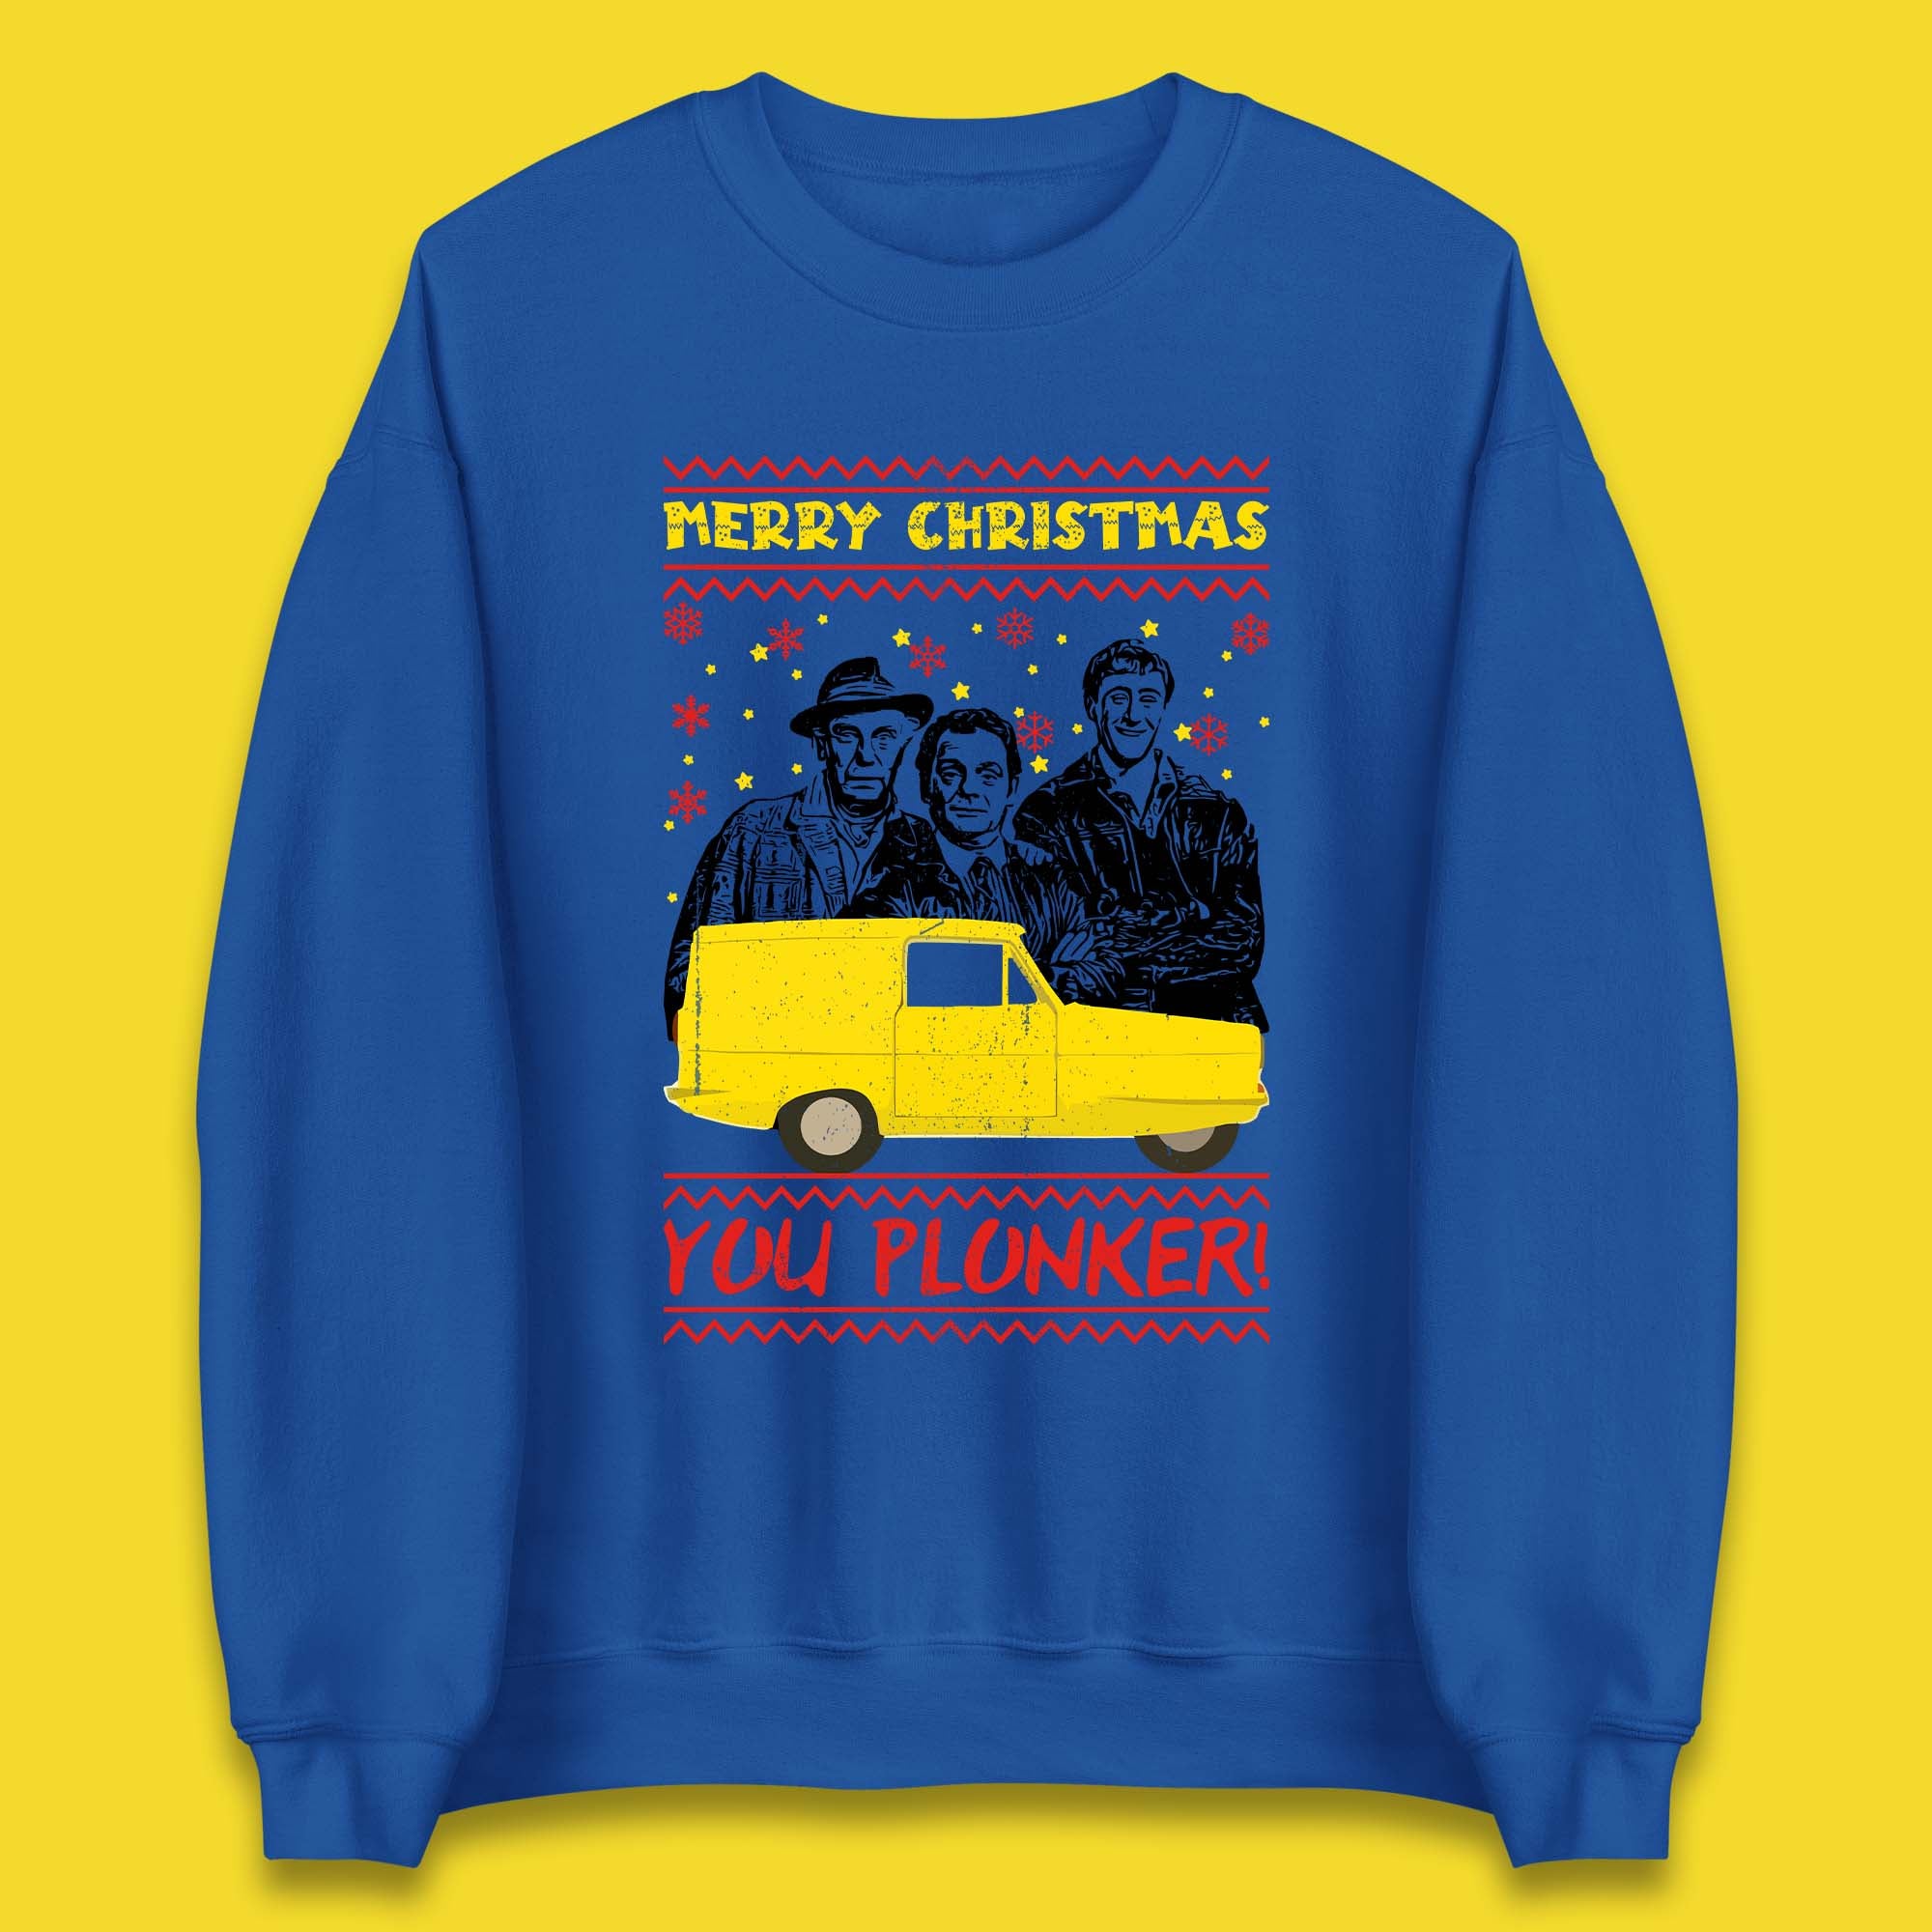 Merry Christmas You Plunker Unisex Sweatshirt